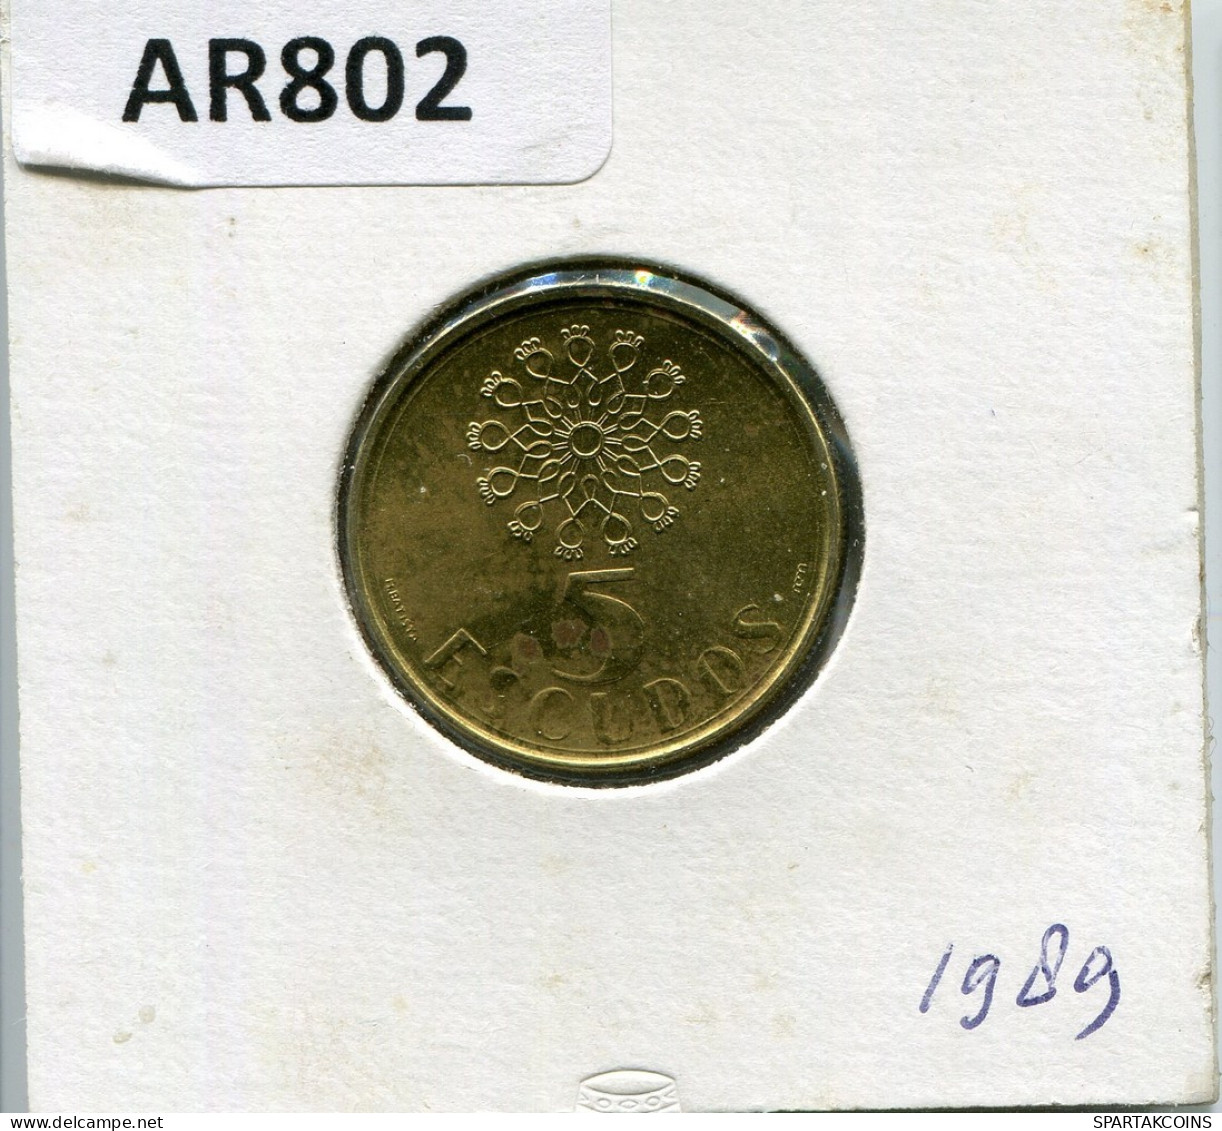 5 ESCUDOS 1989 PORTUGAL Moneda #AR802.E.A - Portugal